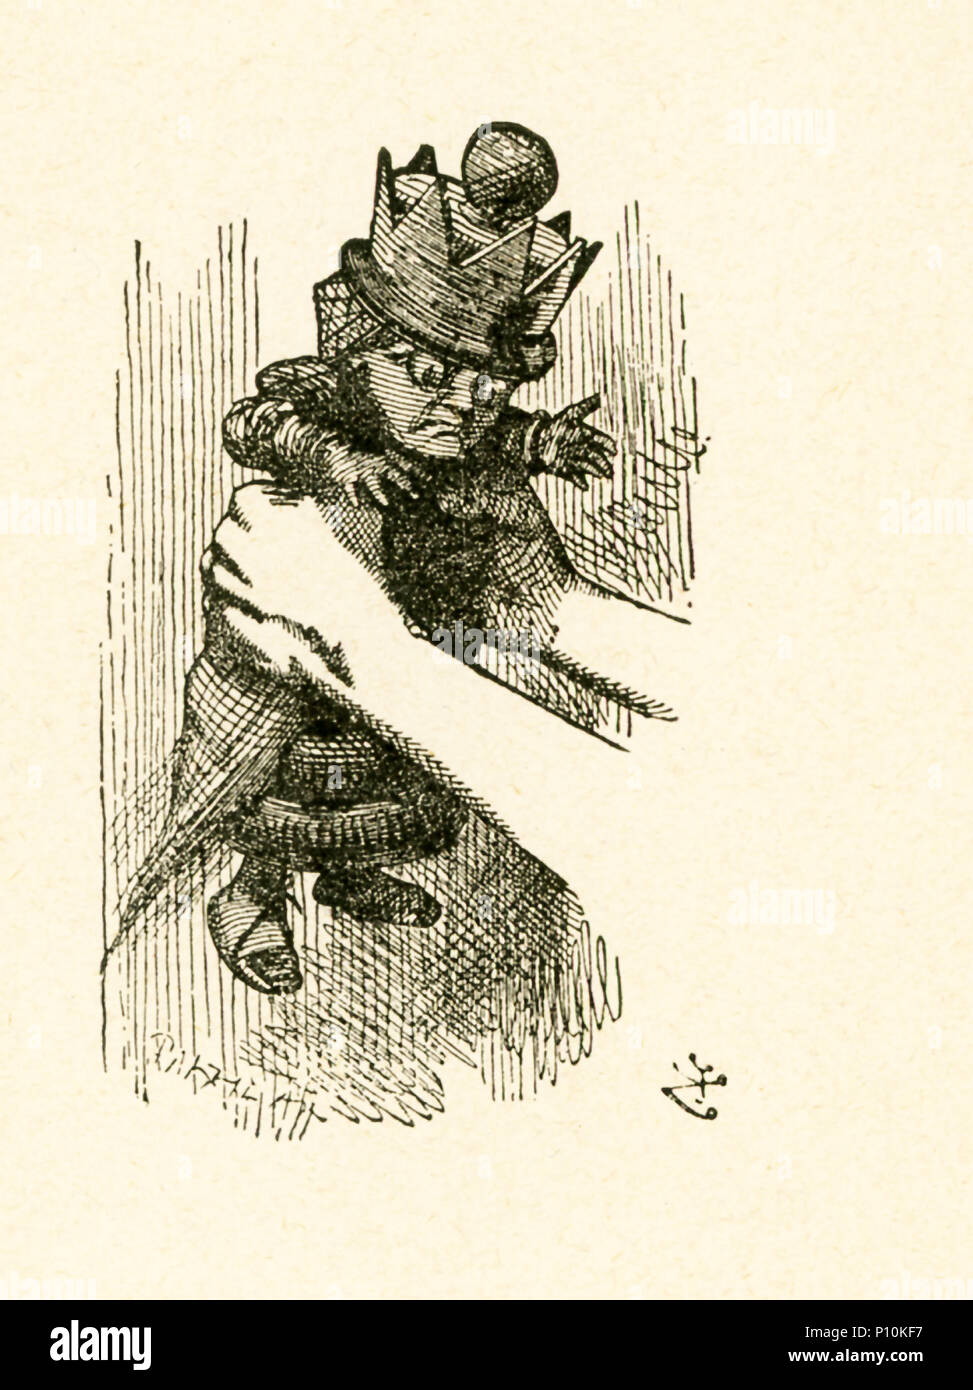 Esta ilustración de Alice la celebración de la Reina Roja es de 'a través de la del espejo y lo que Alicia encontró allí" de Lewis Carroll (Charles Lutwidge Dodgson), quien escribió esta novela en 1871 como una secuela de "Alice's Adventures in Wonderland". Foto de stock